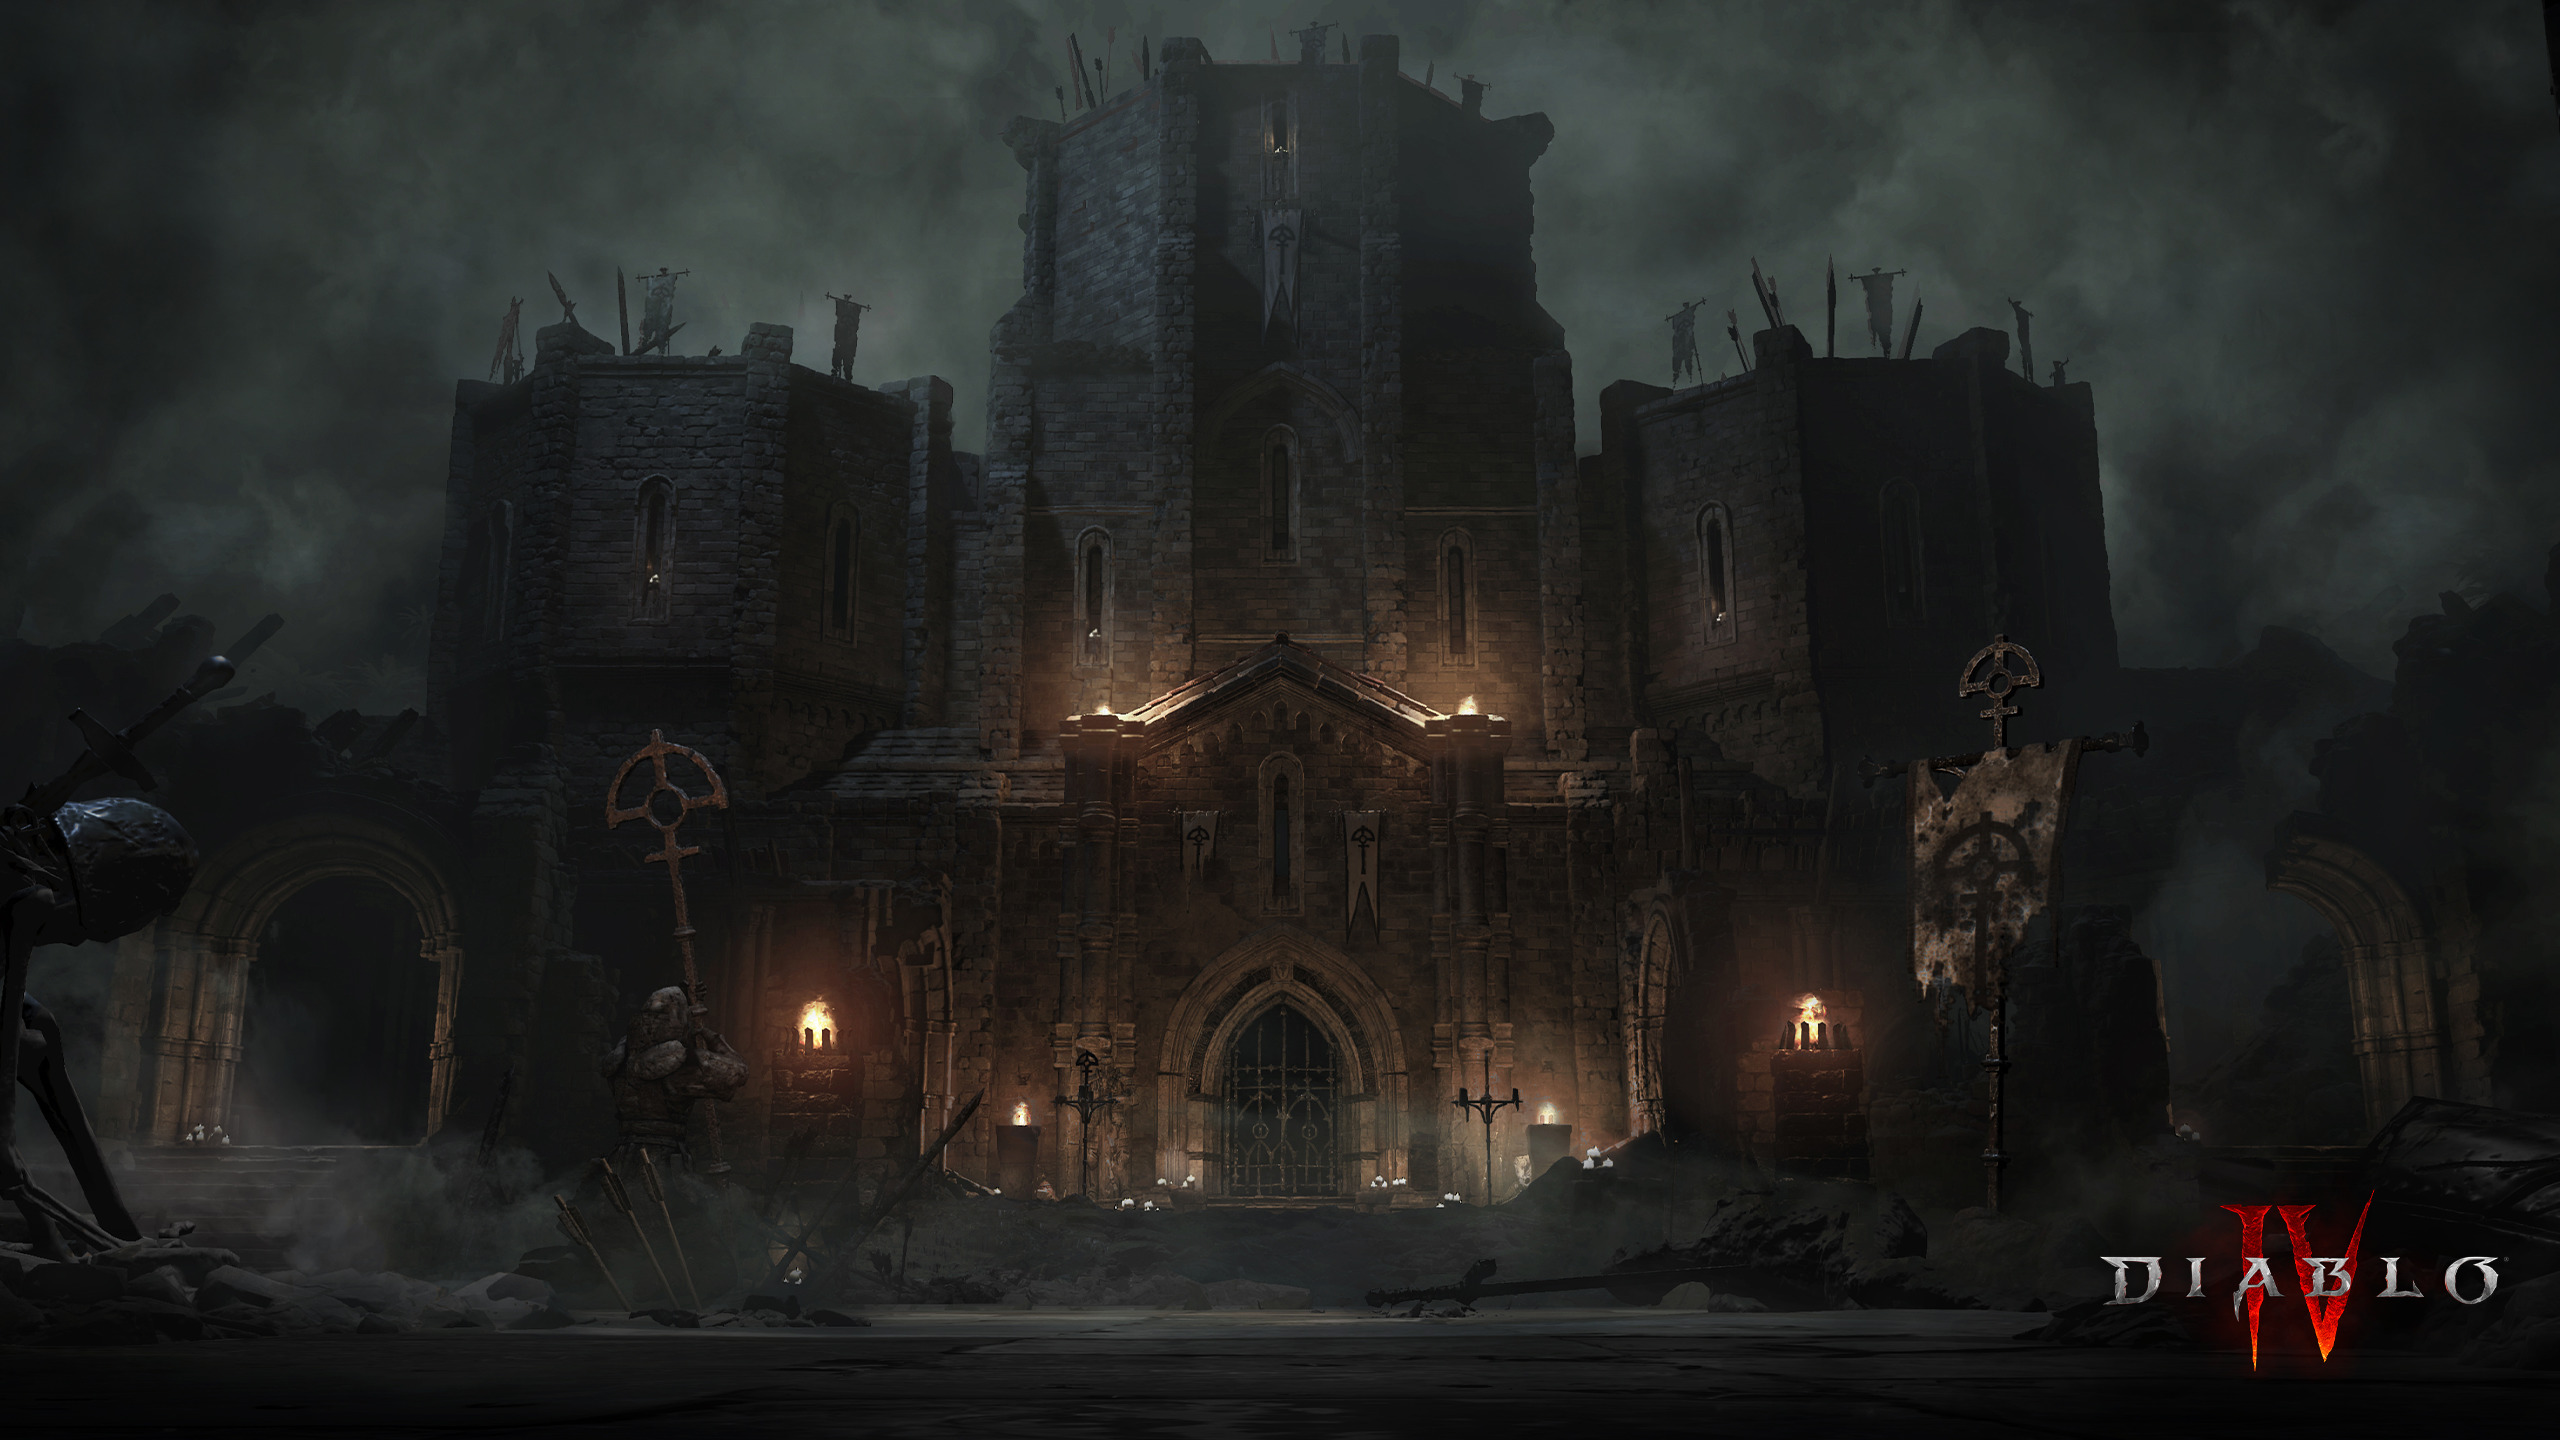 Diablo Diablo IV Video Games Castle Video Game Art Clouds Sky Stairs 2560x1440